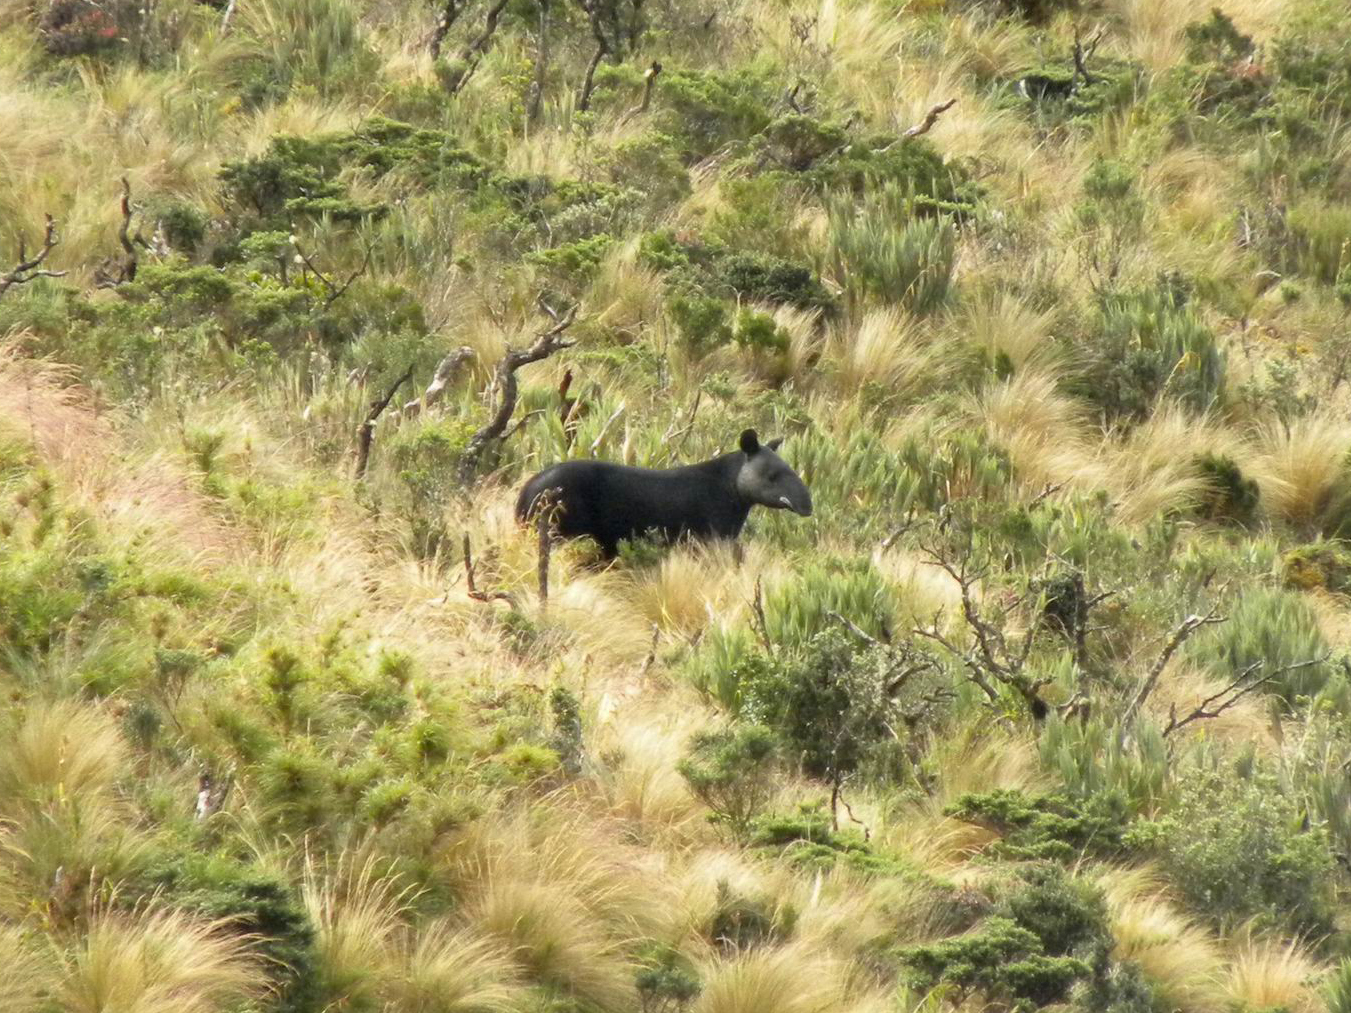 The endangered mountain tapir